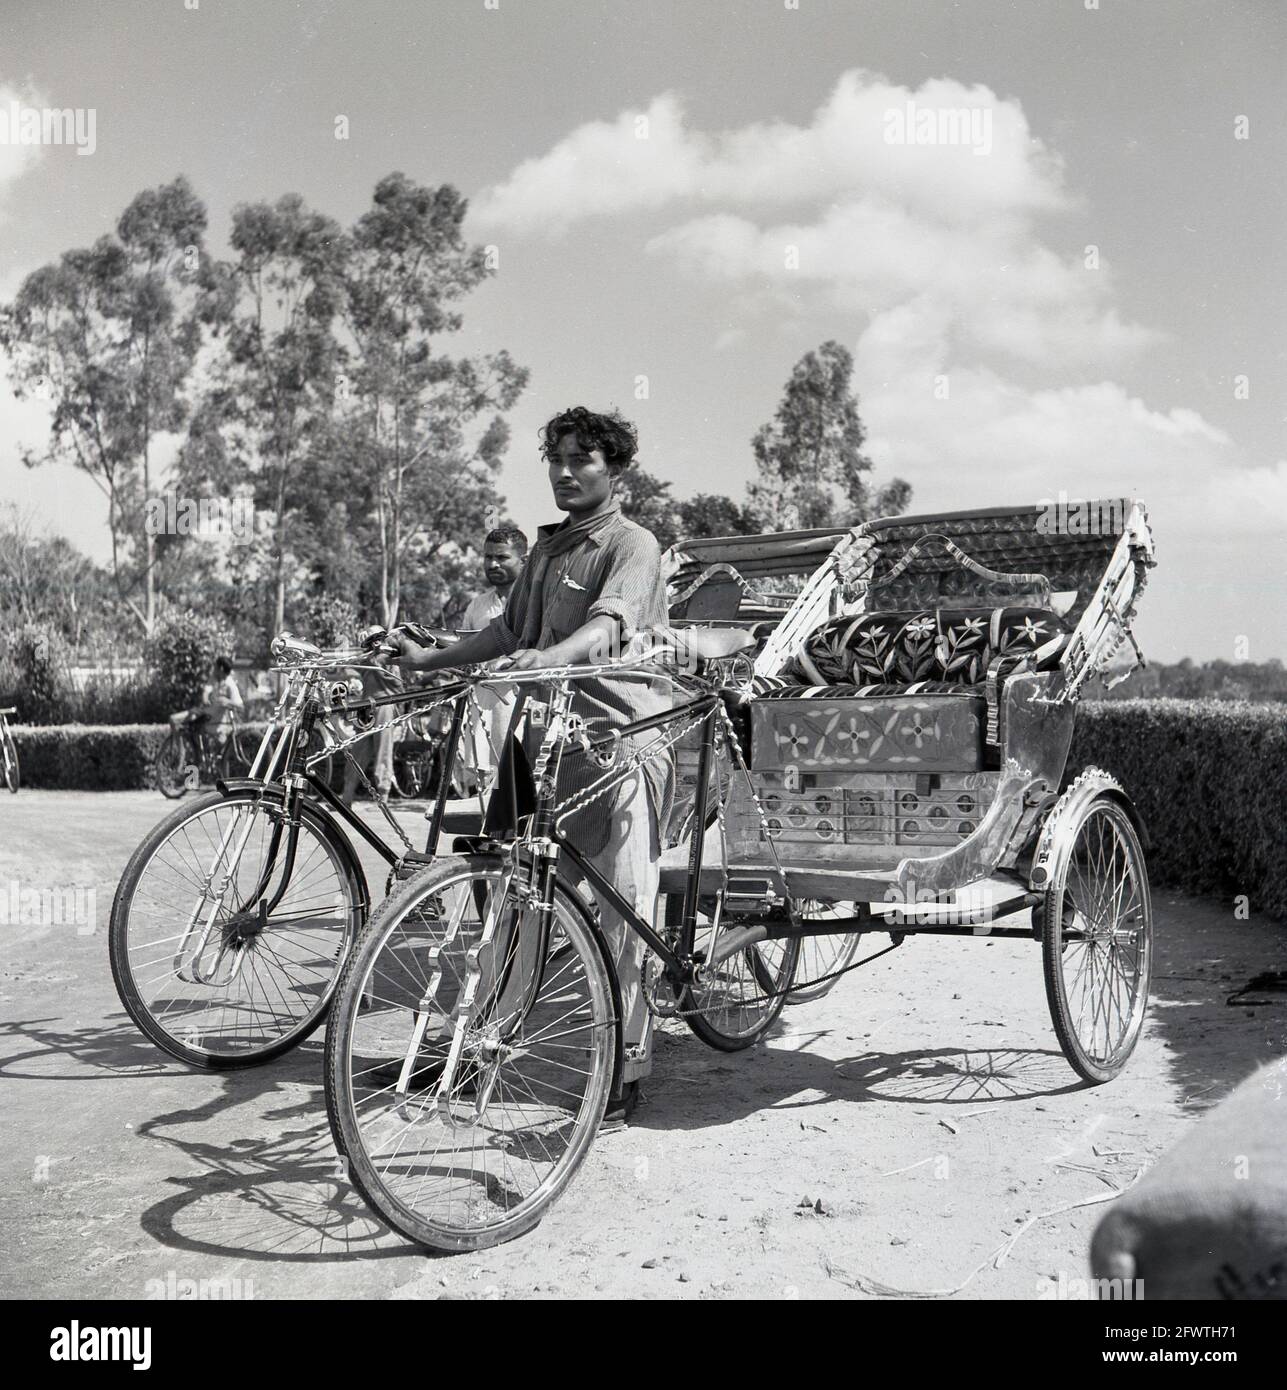 1950s, Indian bike taxi, con los conductores esperando a los clientes,  India, estos rickstraw de ciclo eran transporte local a pequeña escala, una  especie de triciclo de berlina, y llevaría a los